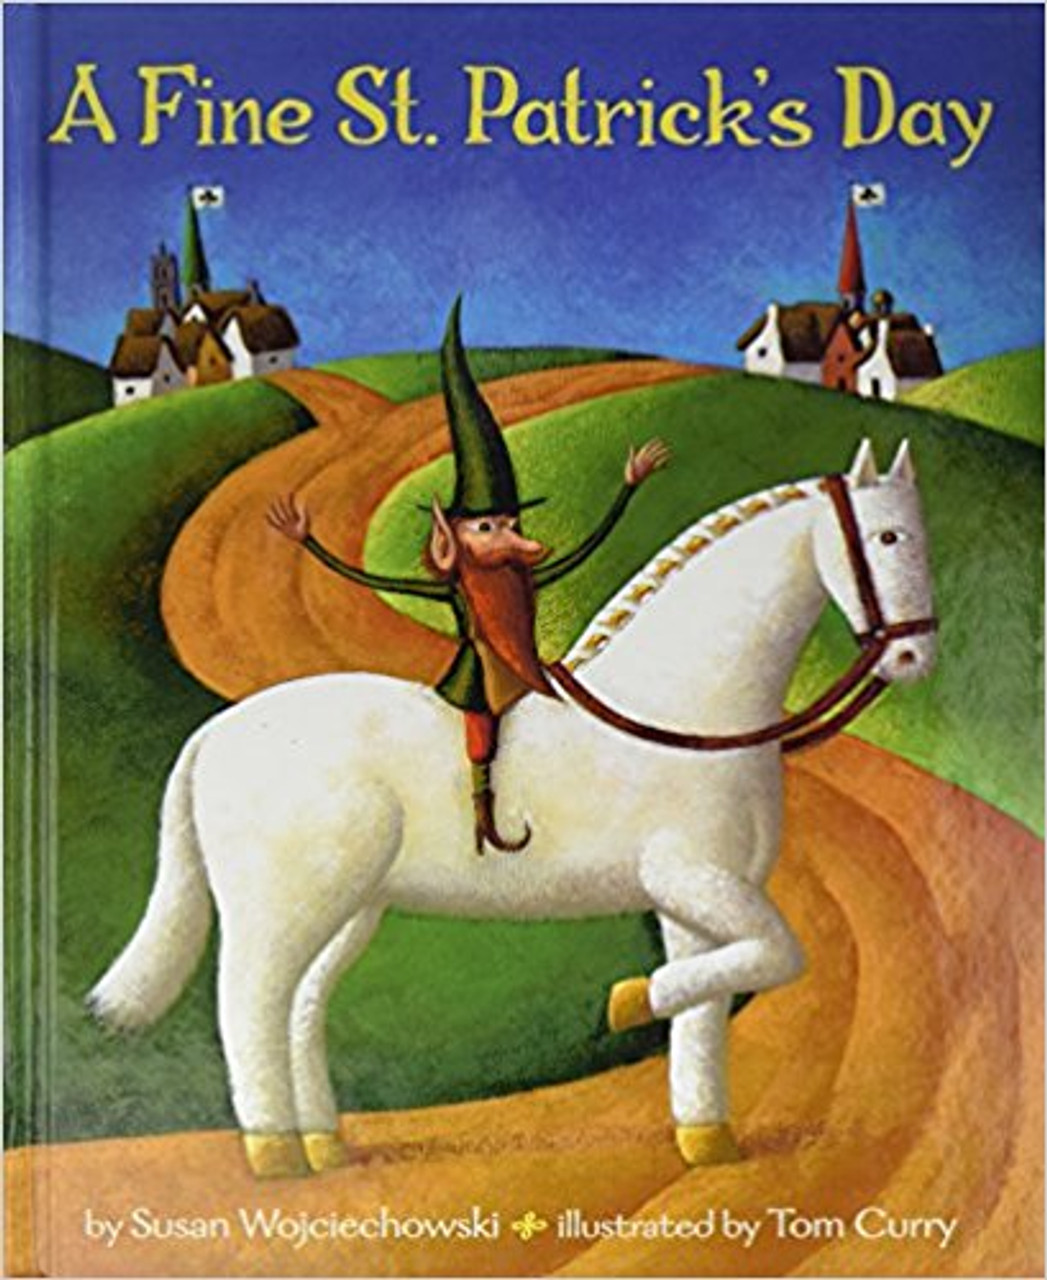 A Fine St. Patrick's Day by Susan Wojciechowski